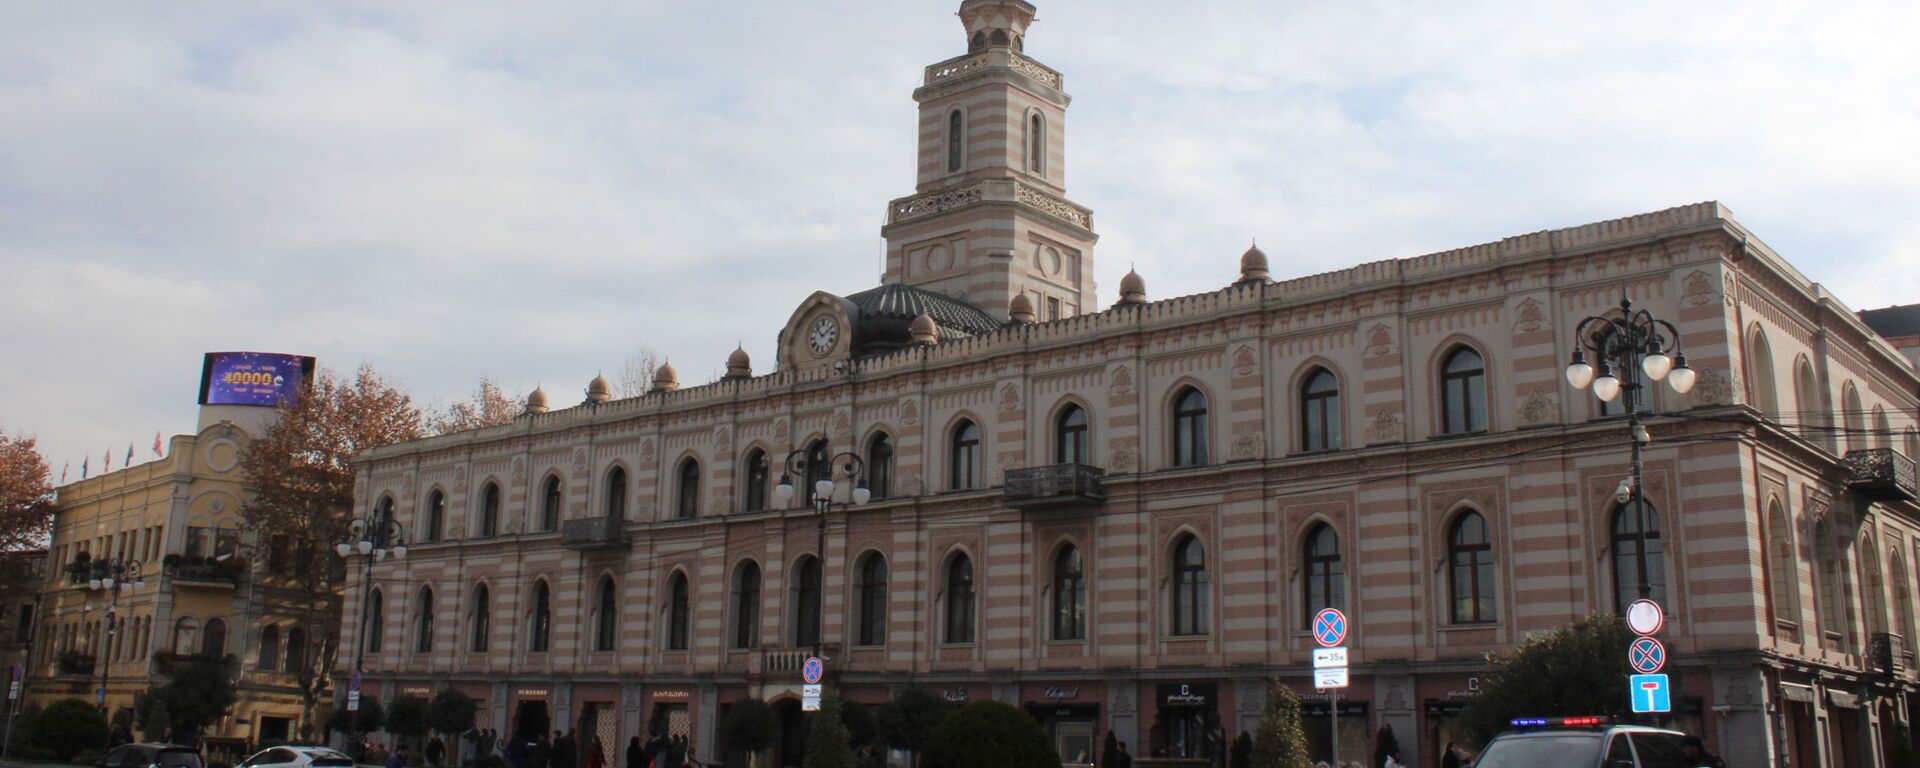 Здание, где в настоящее время находится тбилисское Сакребуло - городской совет, на площади Свободы - Sputnik Грузия, 1920, 02.12.2021